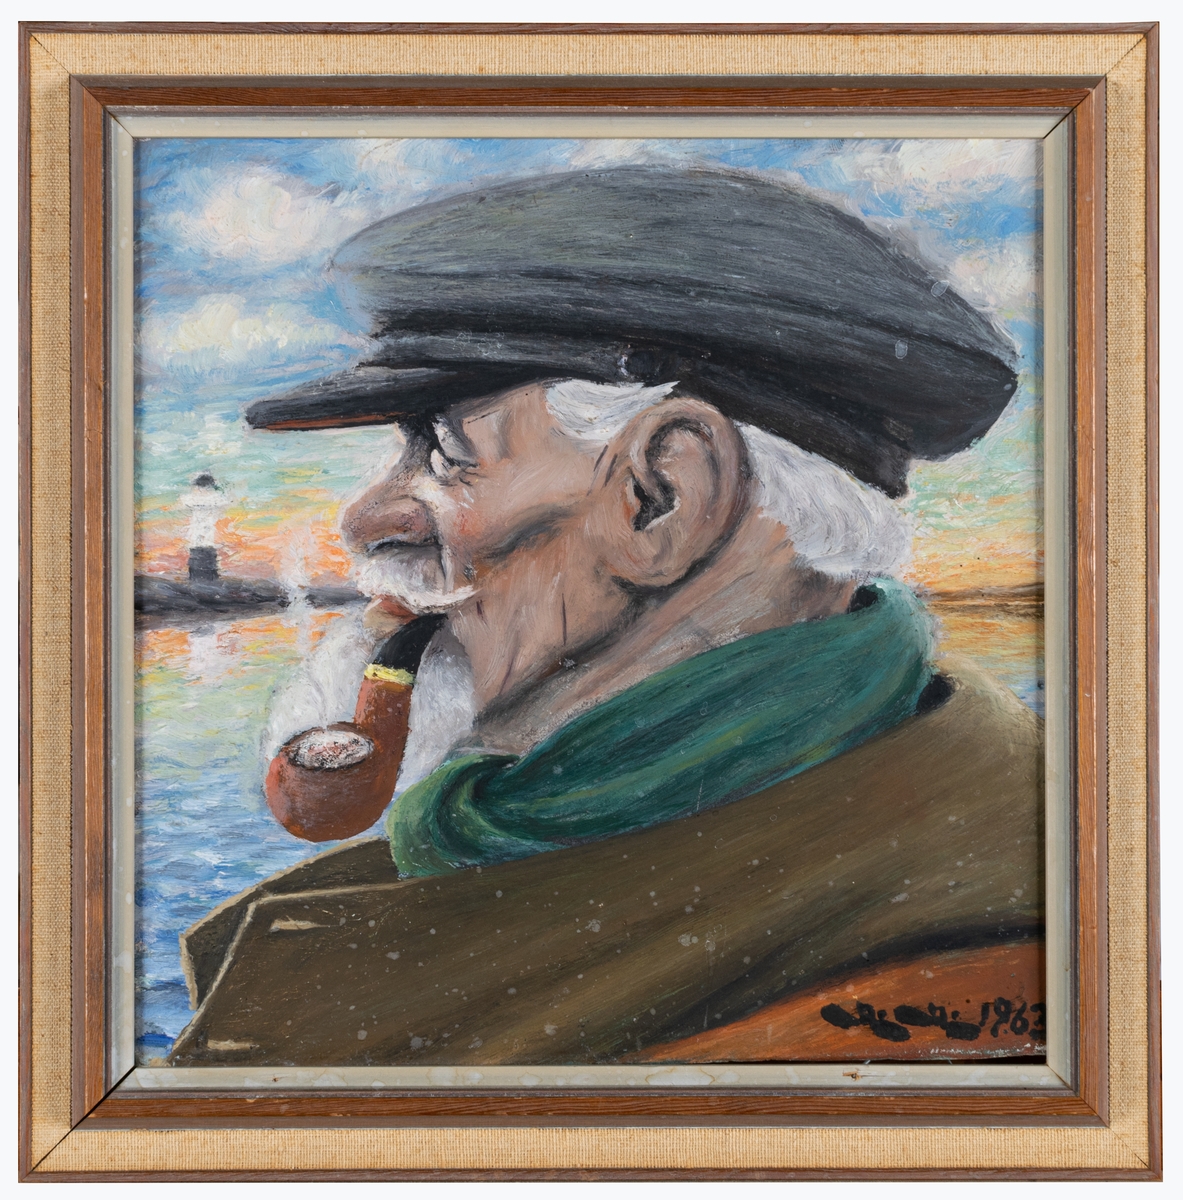 Fiskargubbe med skägg och pipa i munnen och keps avbildad i vänsterprofil med hav och en fyr i bakgrunden. Ett traditionellt motiv som bygger på den tyske marinmålaren Harry Haerendels välkända målning från ca 1920 "Der alte Seebär" (Den gamle sjöbjörnen).